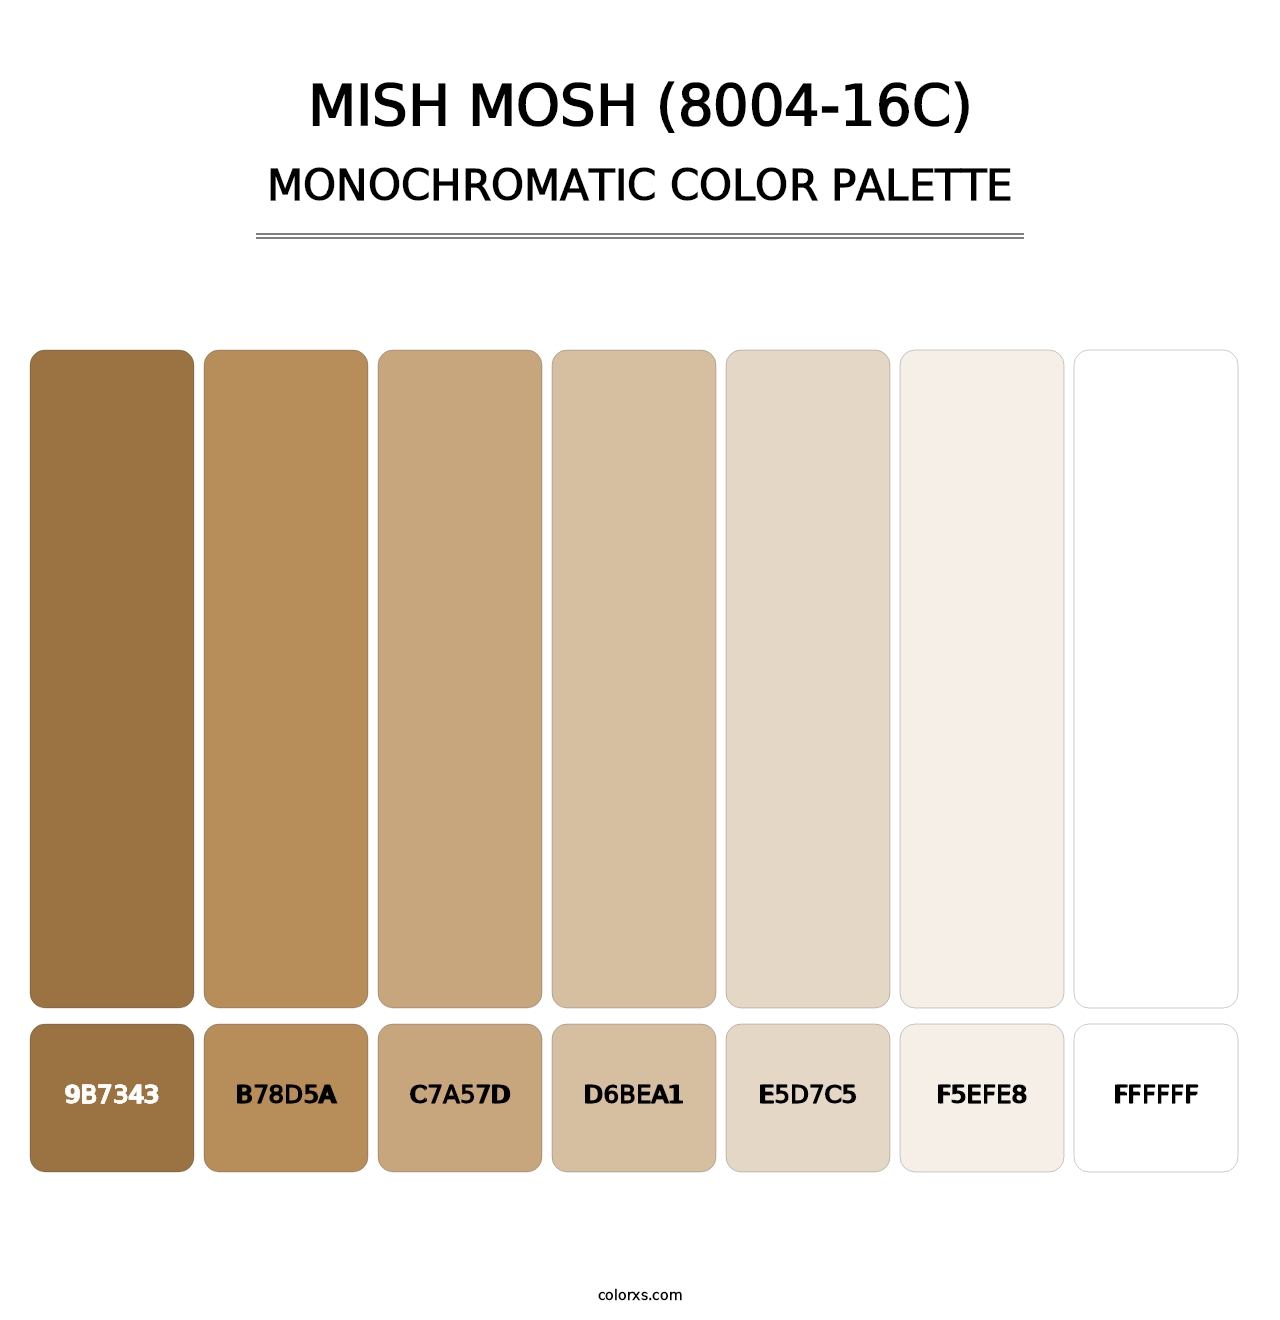 Mish Mosh (8004-16C) - Monochromatic Color Palette